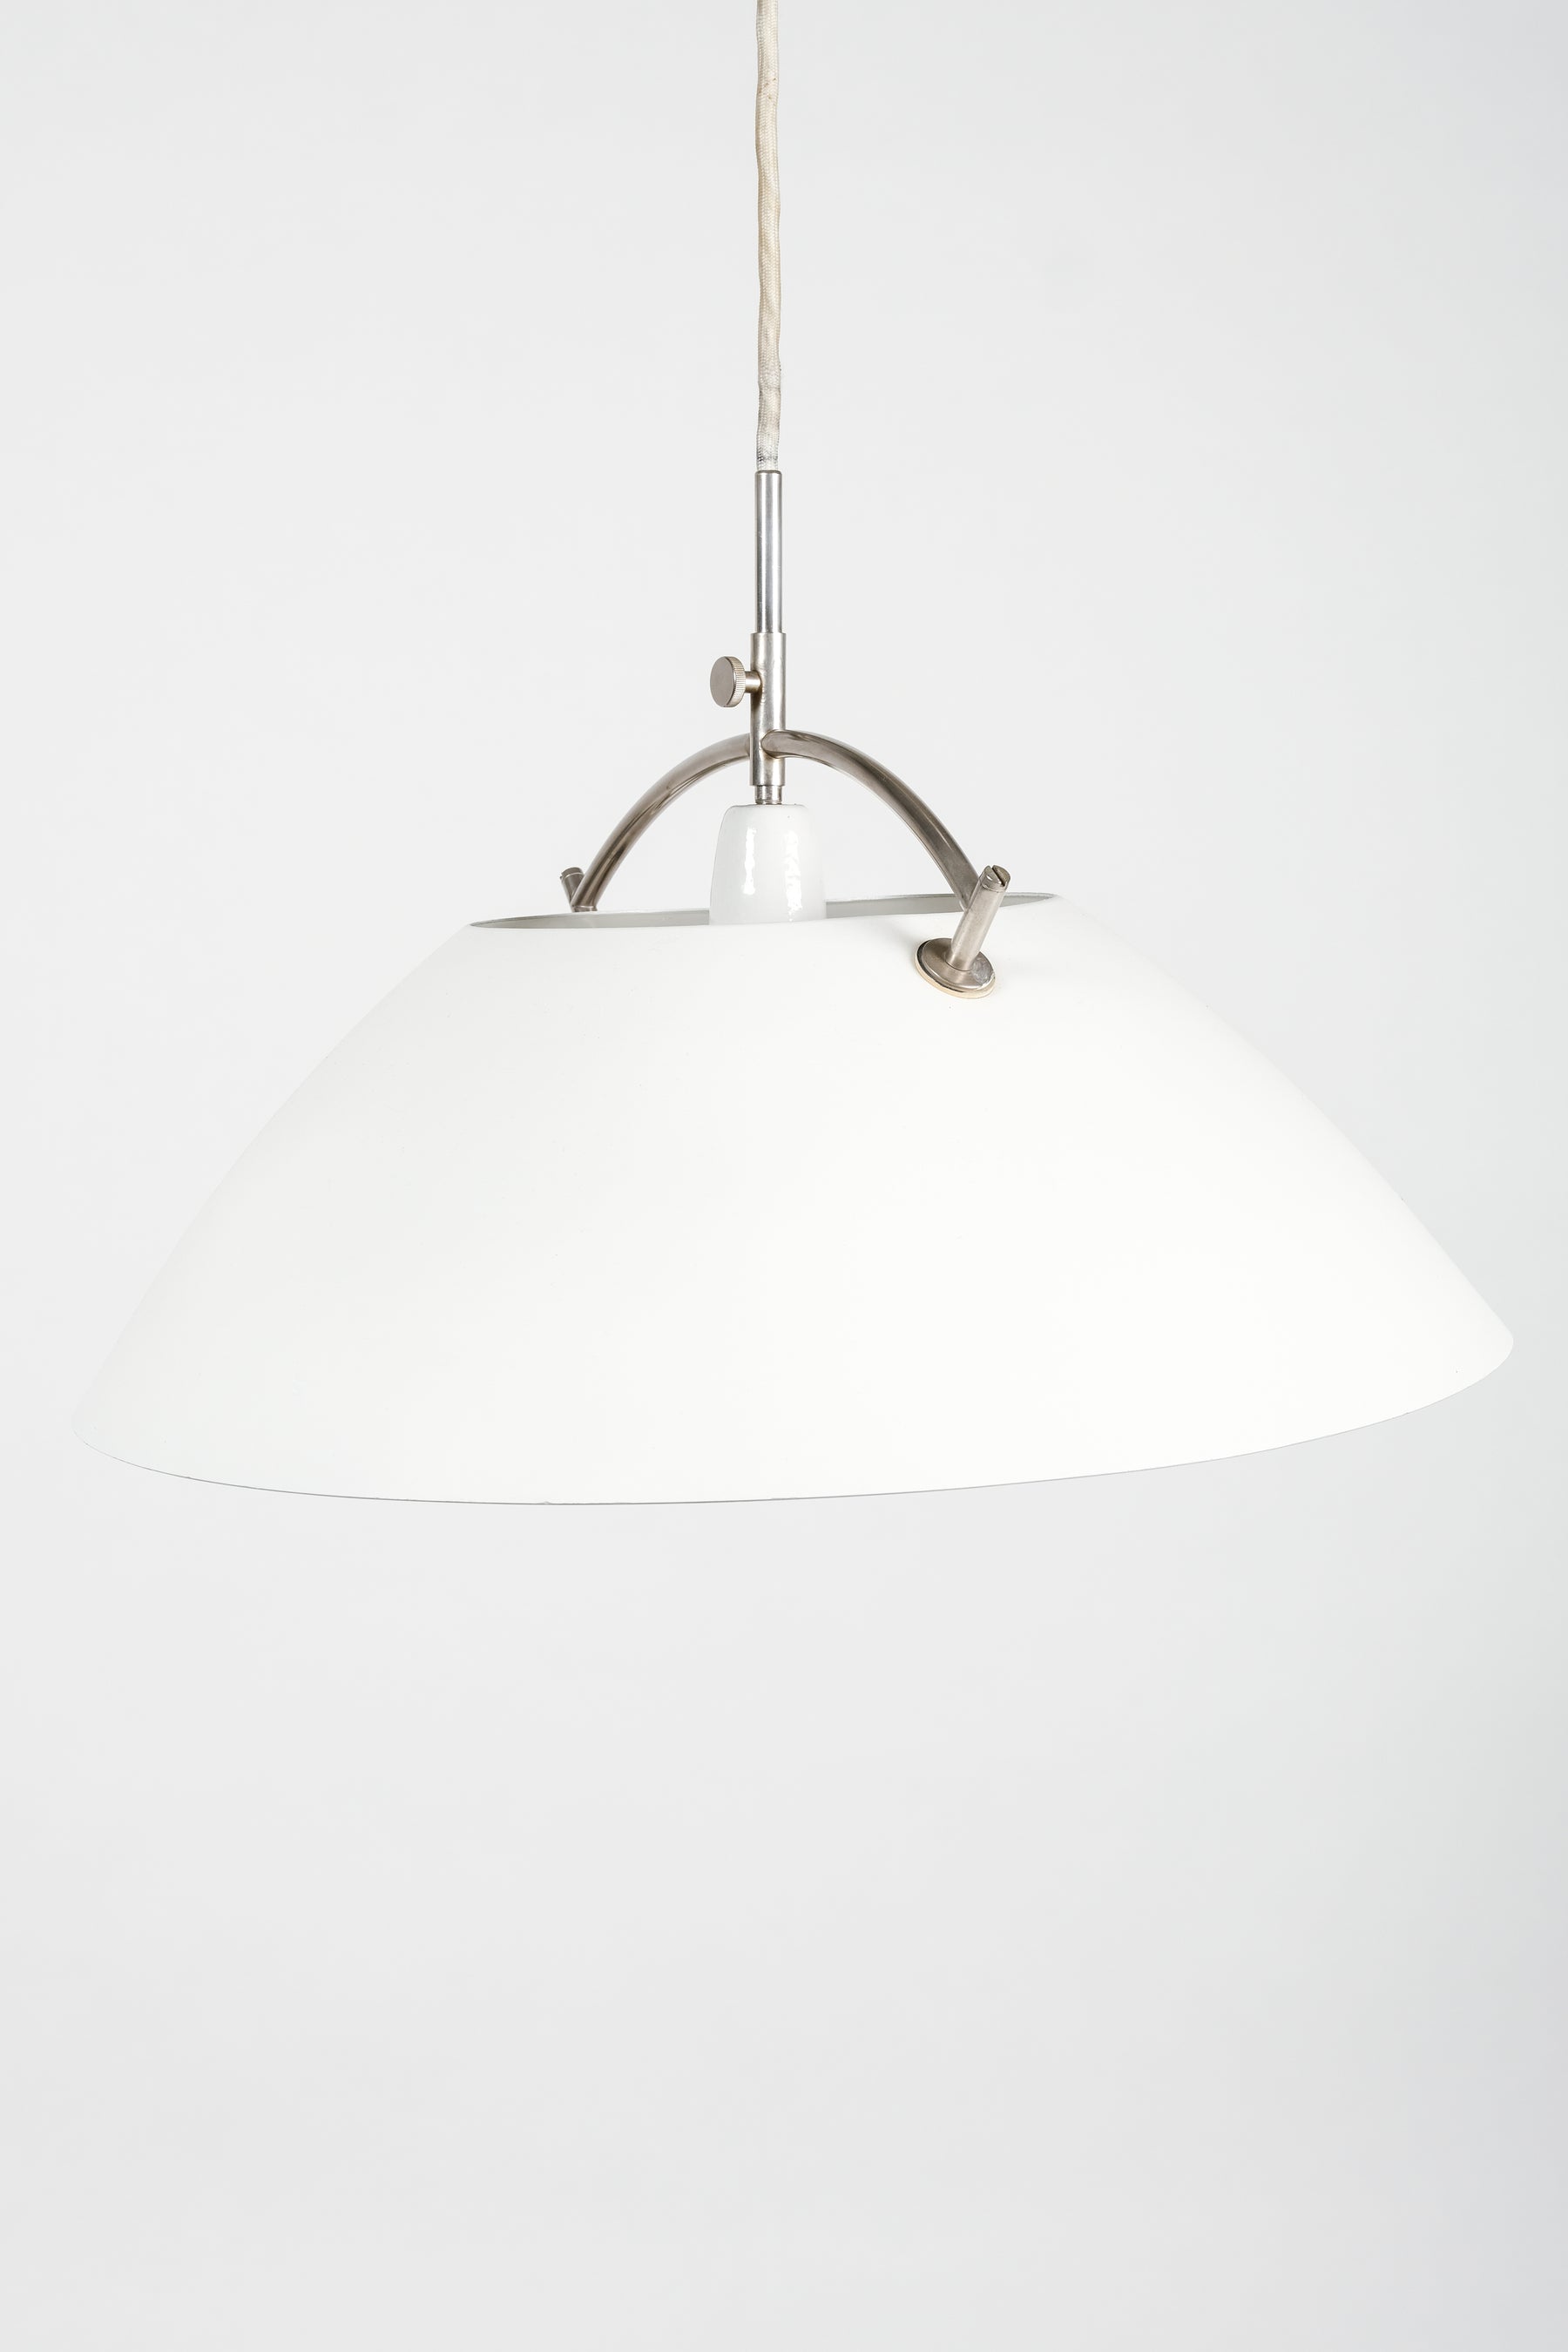 Hans Wegner, Ceiling Lamp JH 604, Louis Poulsen, Denmark, 60s